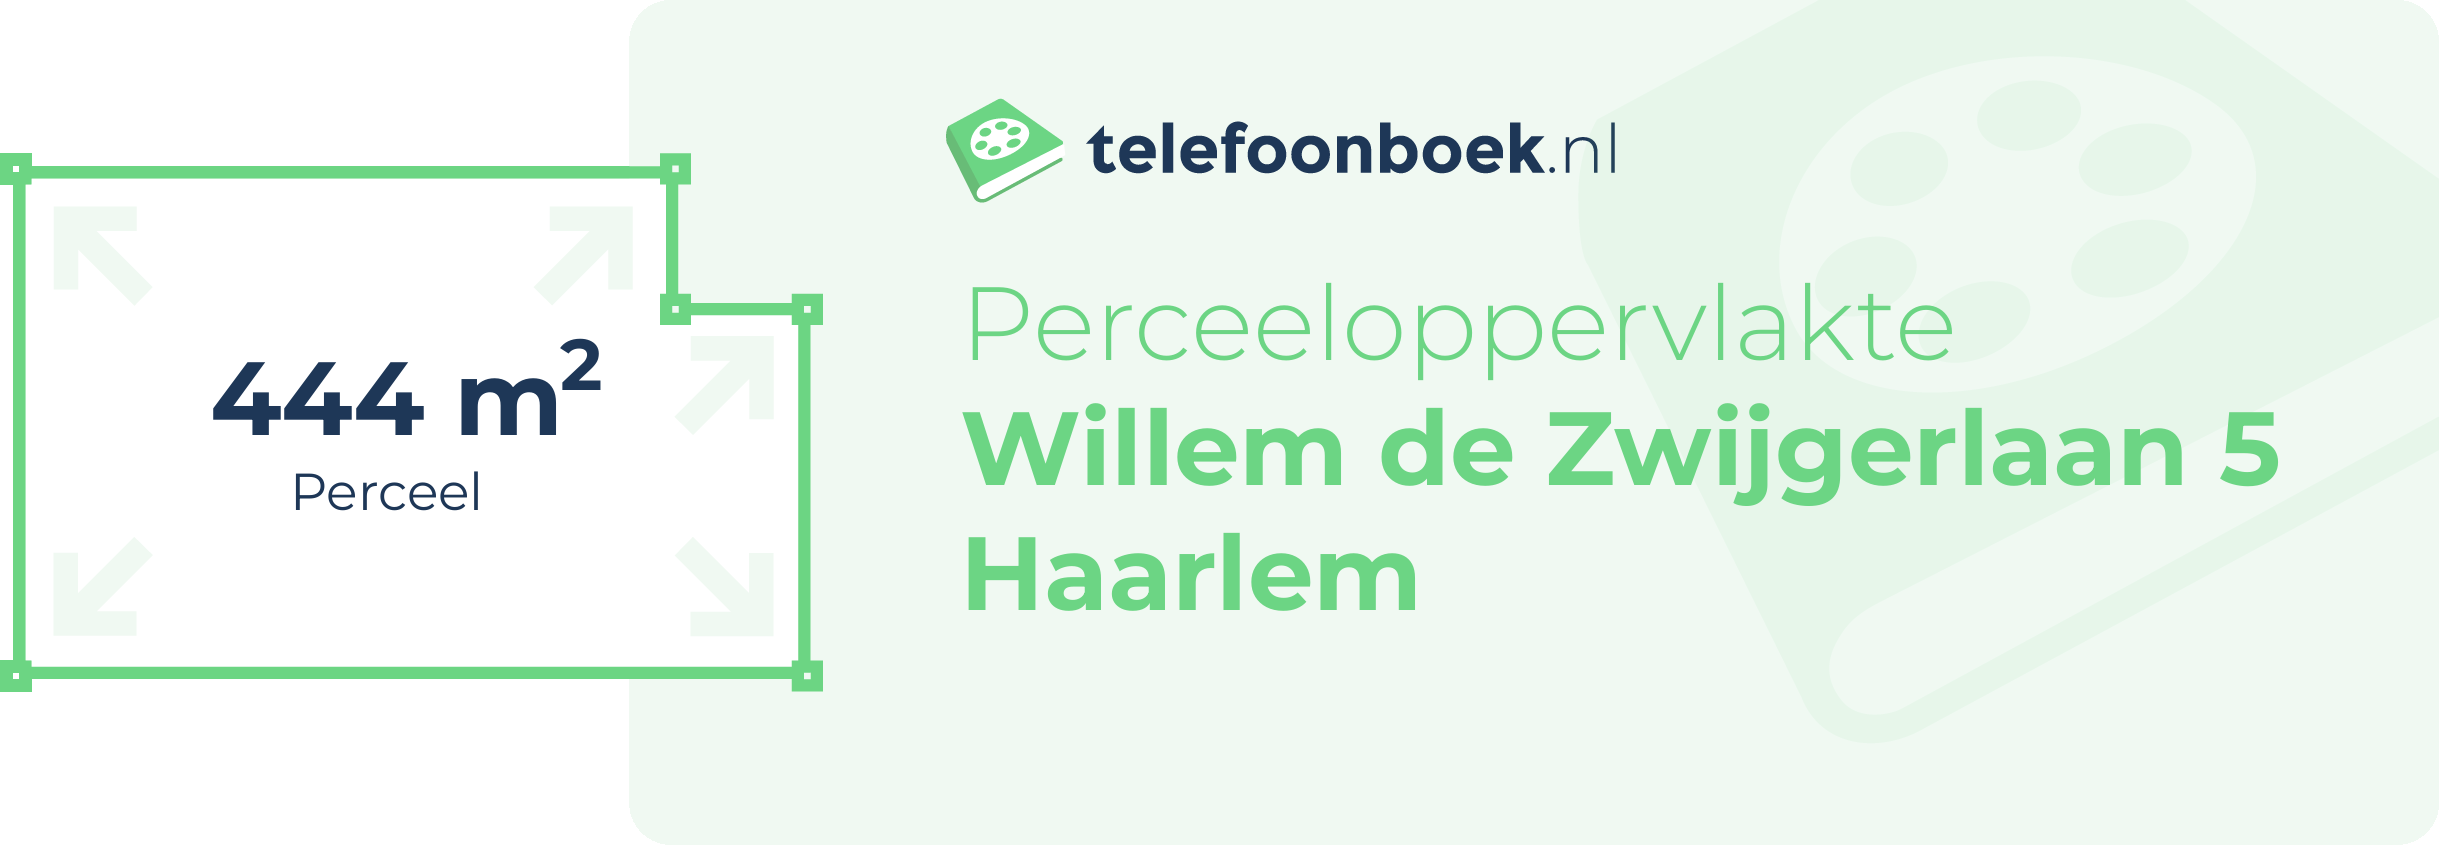 Perceeloppervlakte Willem De Zwijgerlaan 5 Haarlem